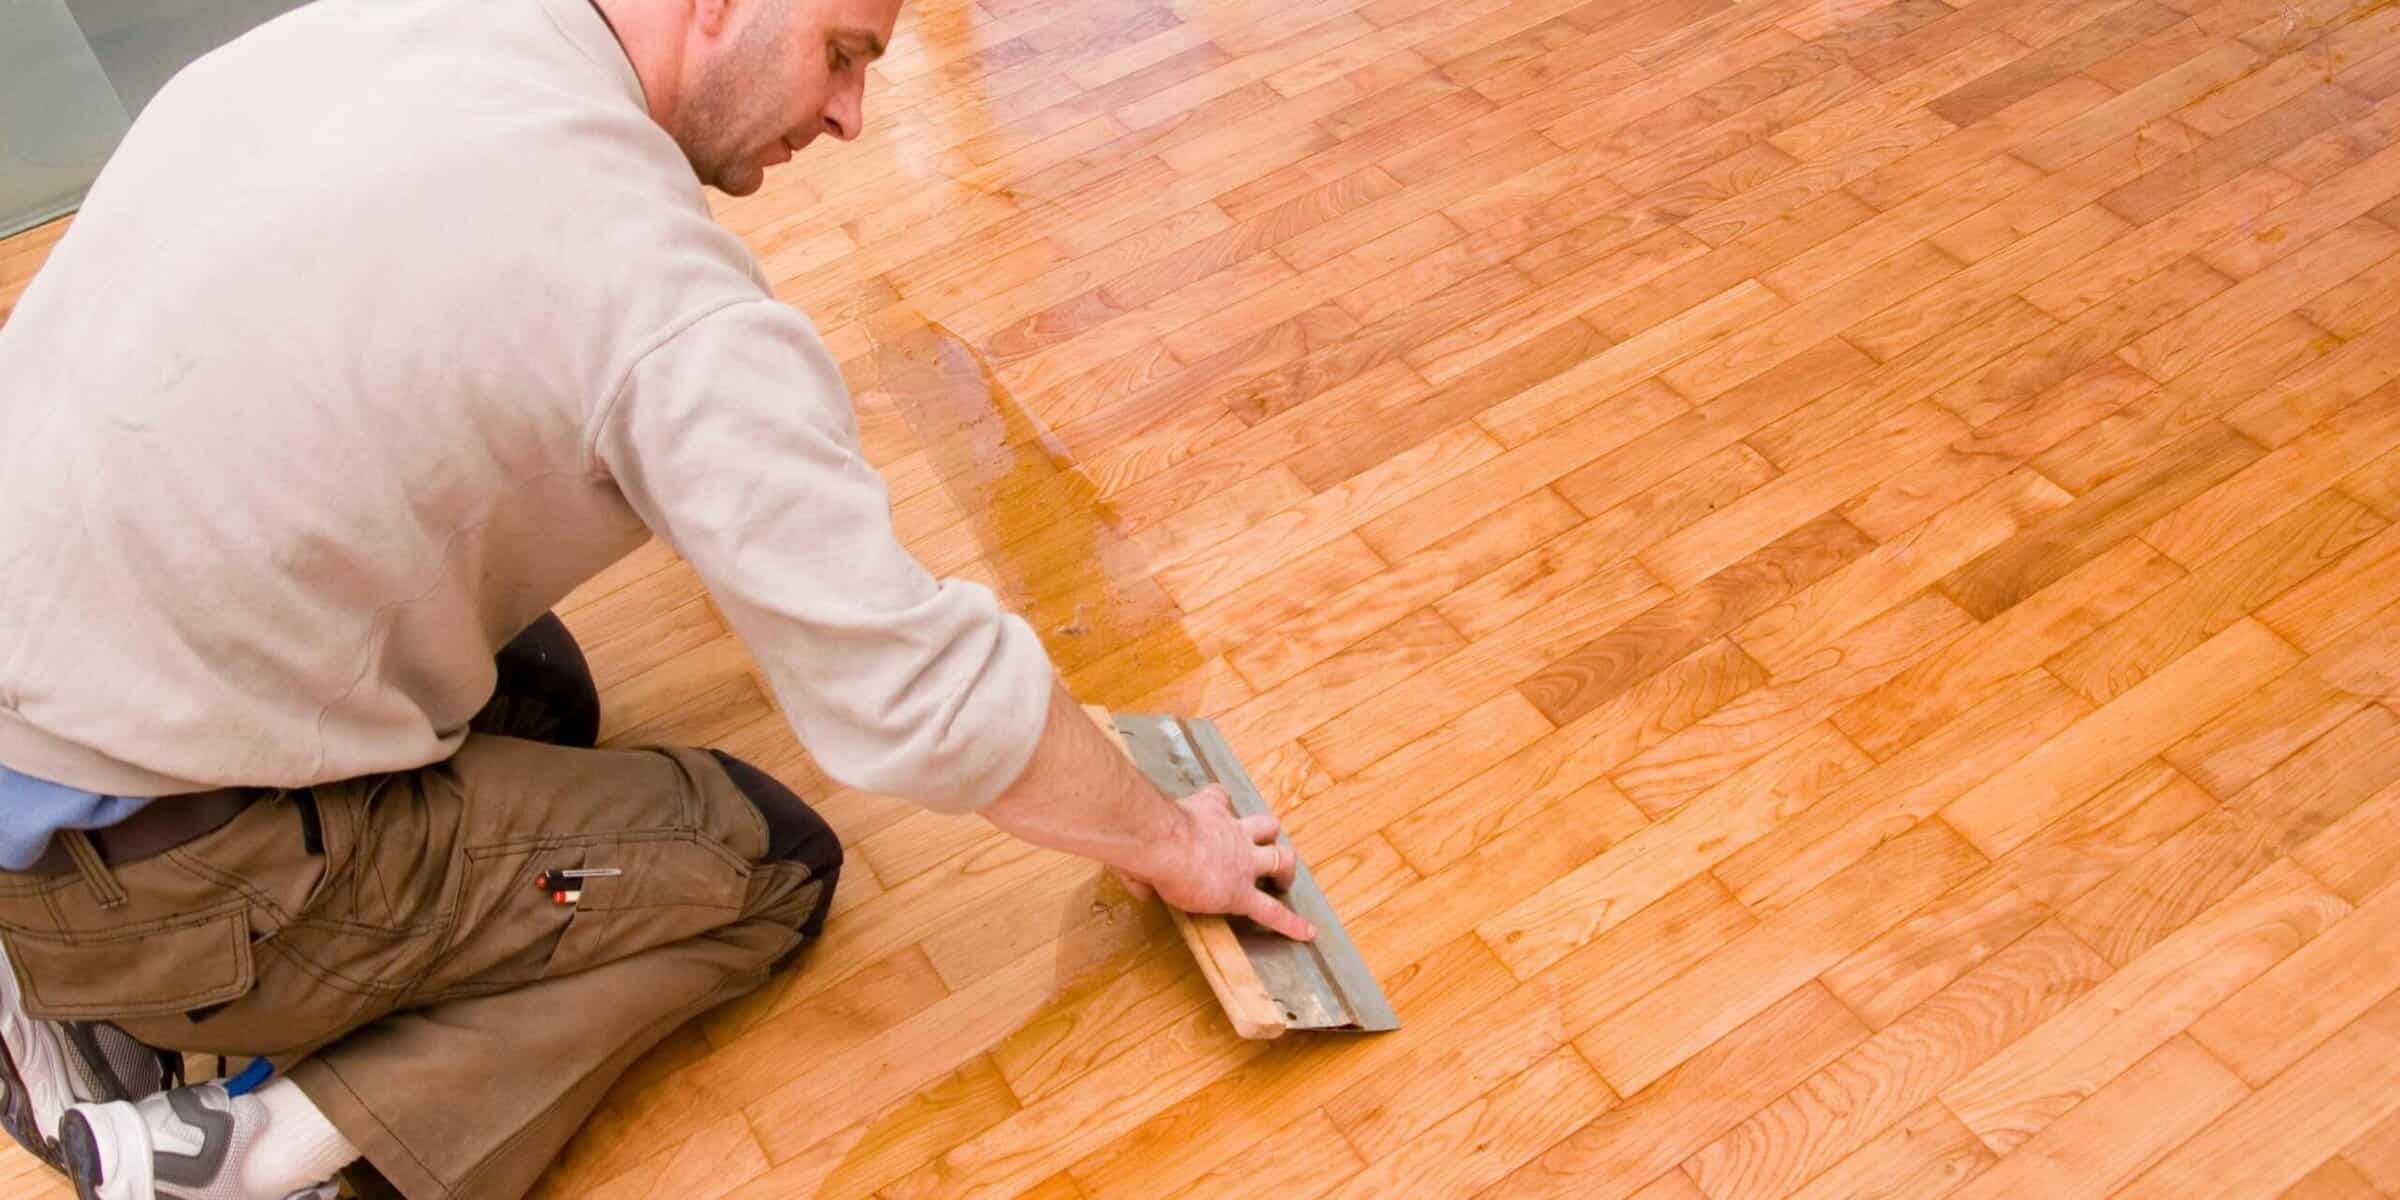 Best Hardwood Floor Wax